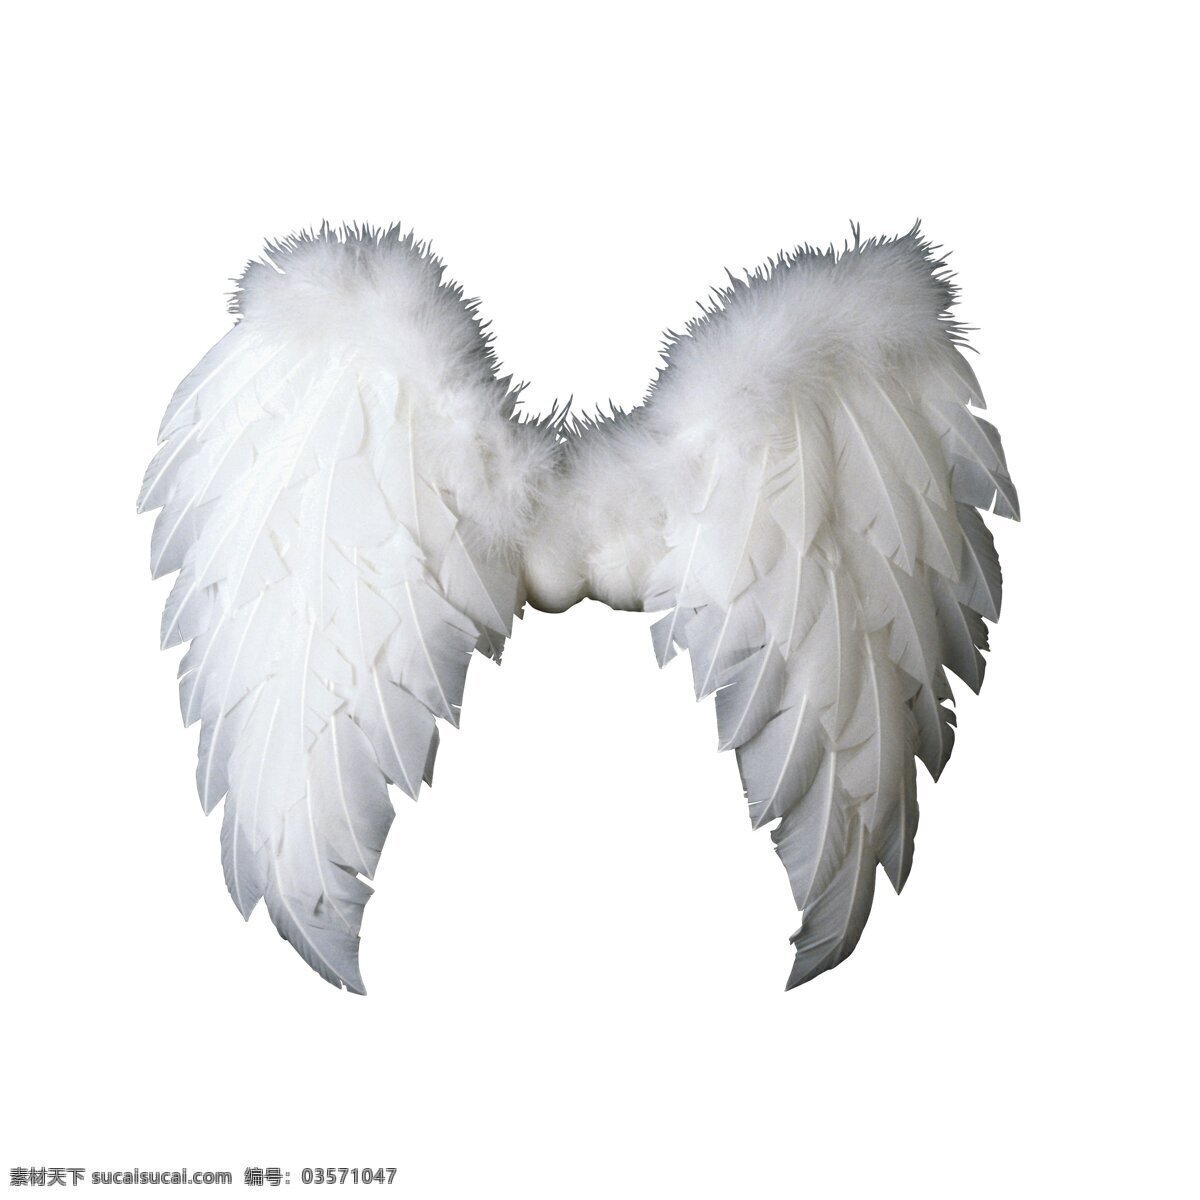 翅膀 鸟类 摄影图库 生物世界 天使 天使的翅膀 信仰 羽毛 宗教 psd源文件